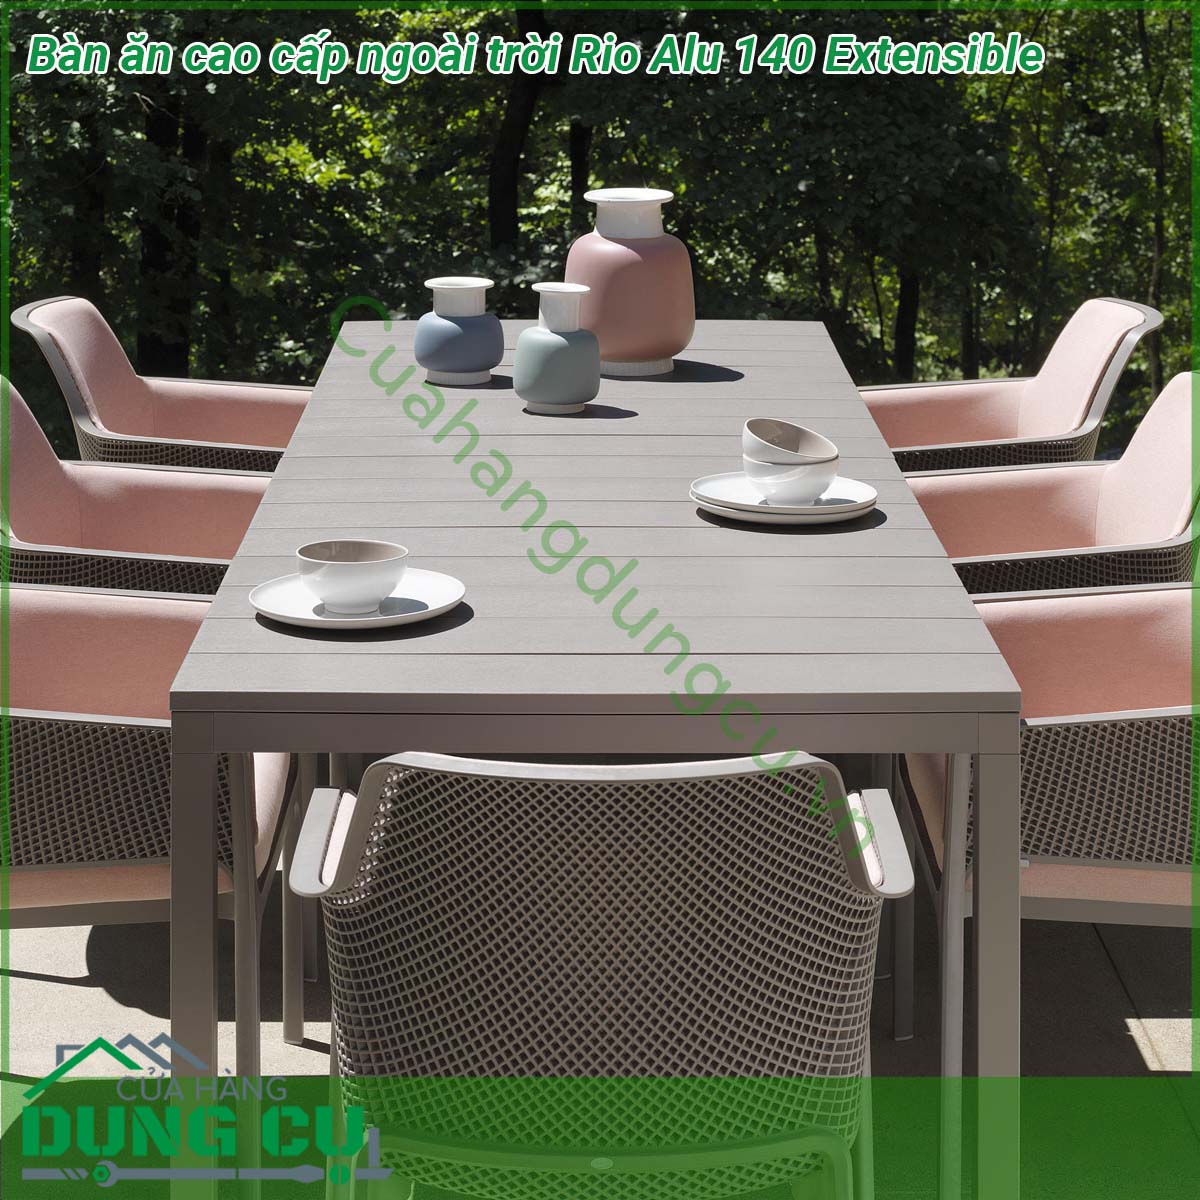 Bàn ăn cao cấp ngoài trời Rio Alu 140 Extensible được làm bằng chất liệu nhôm phủ coated aluminium cao cấp  Một mẫu bàn thông minh có khả năng thay đổi chiều dài bàn với một thao tác nhẹ nhàng phù hợp yêu cầu không gian và diện tích Đường nét thiết kế mạnh mẽ tinh tế và sang trọng